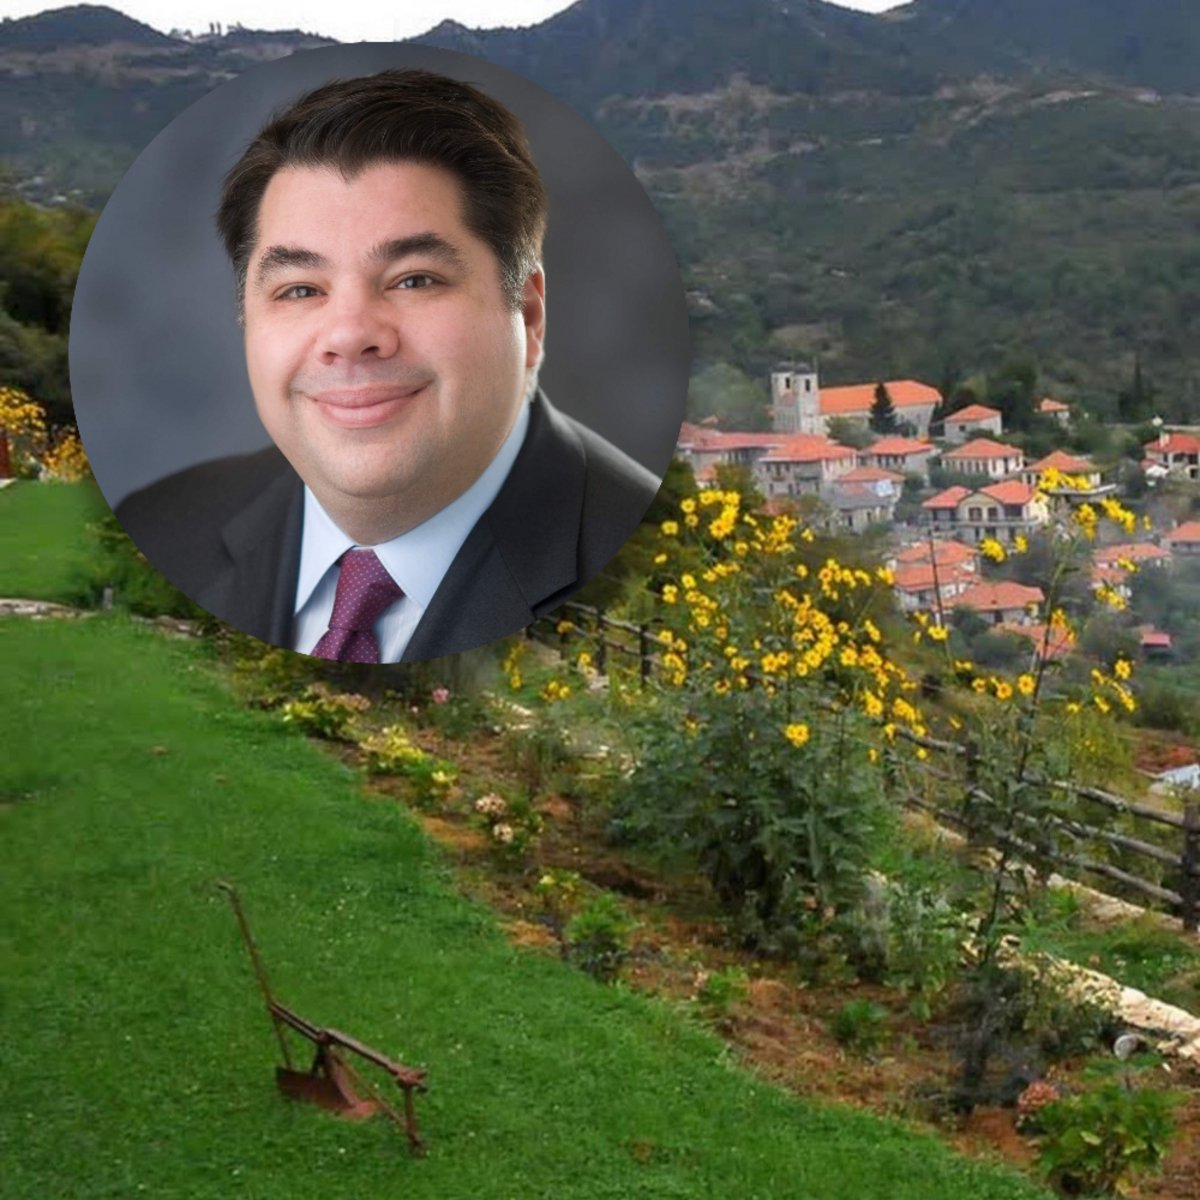 Τζορτζ Τσούνης: Από αυτό το γραφικό χωριό της ορεινής Ναυπακτίας κατάγεται  ο υποψήφιος νέος Αμερικανός πρέσβης - iefimerida.gr